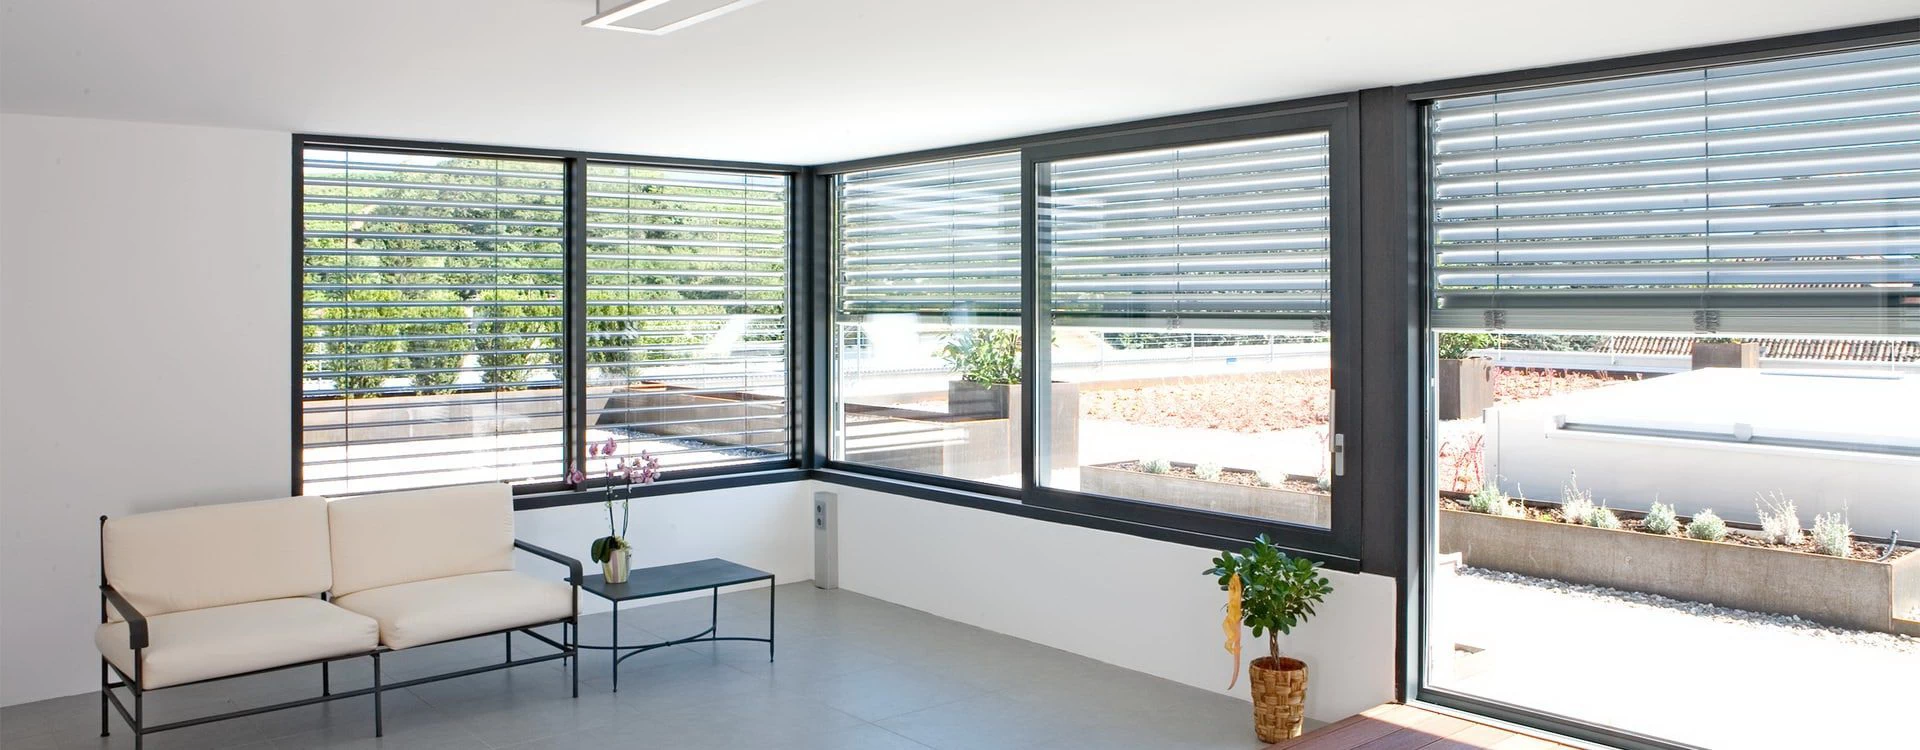 Materiali finestre Torino - Icos per la Casa